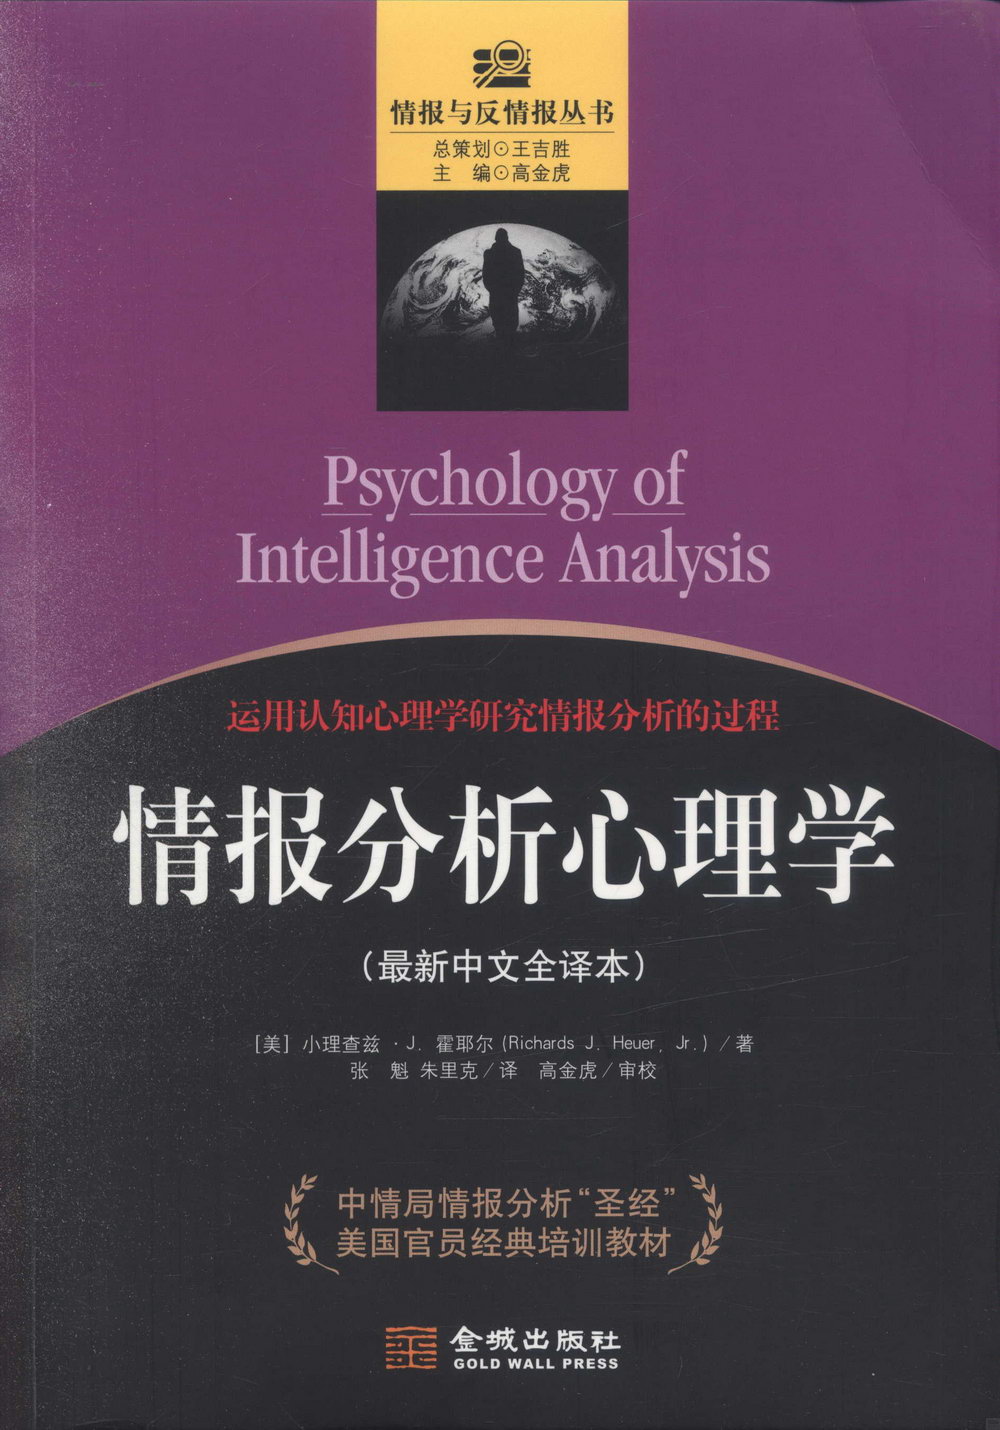 情報分析心理學(最新中文全譯本)